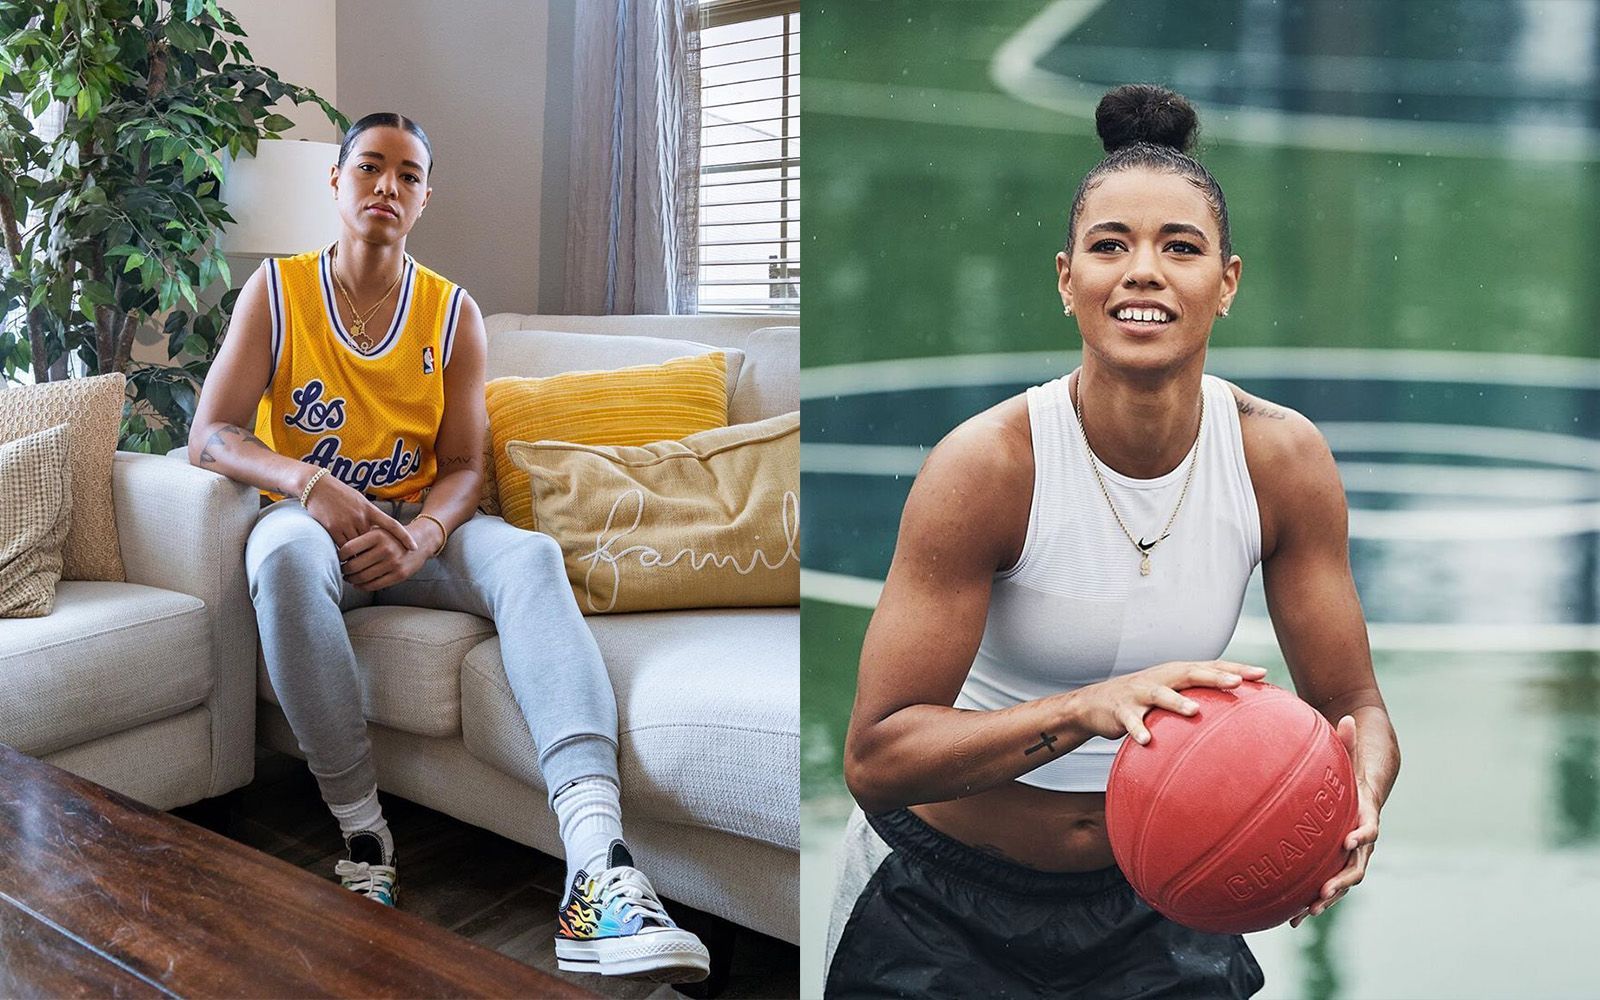 Η Natasha Cloud είναι η πρώτη γυναίκα παίκτρια basket που υπογράφει με την Converse